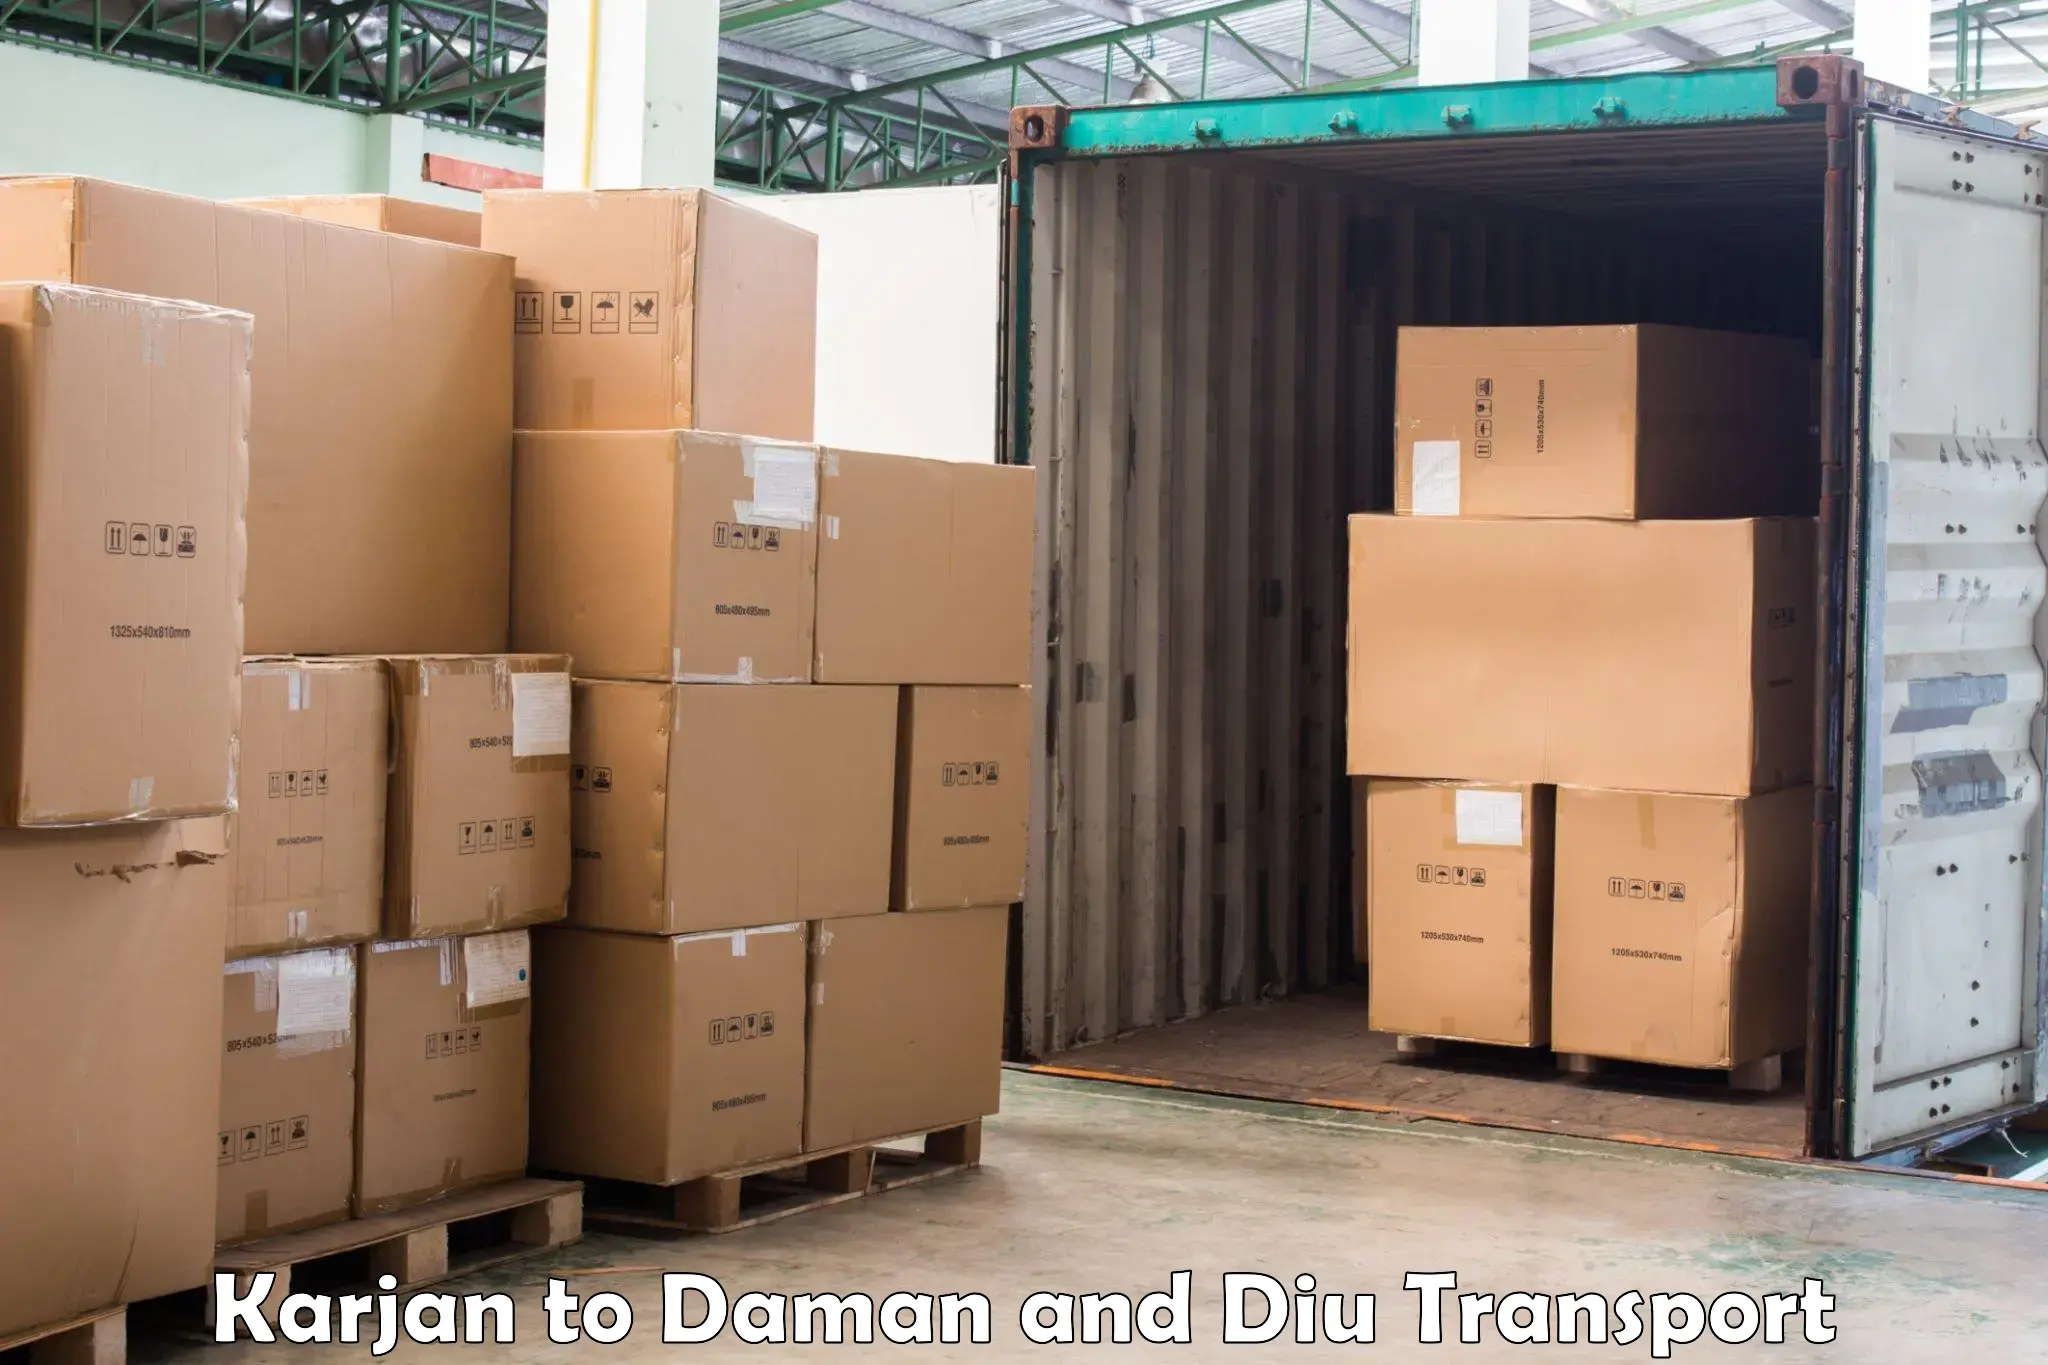 Land transport services Karjan to Daman